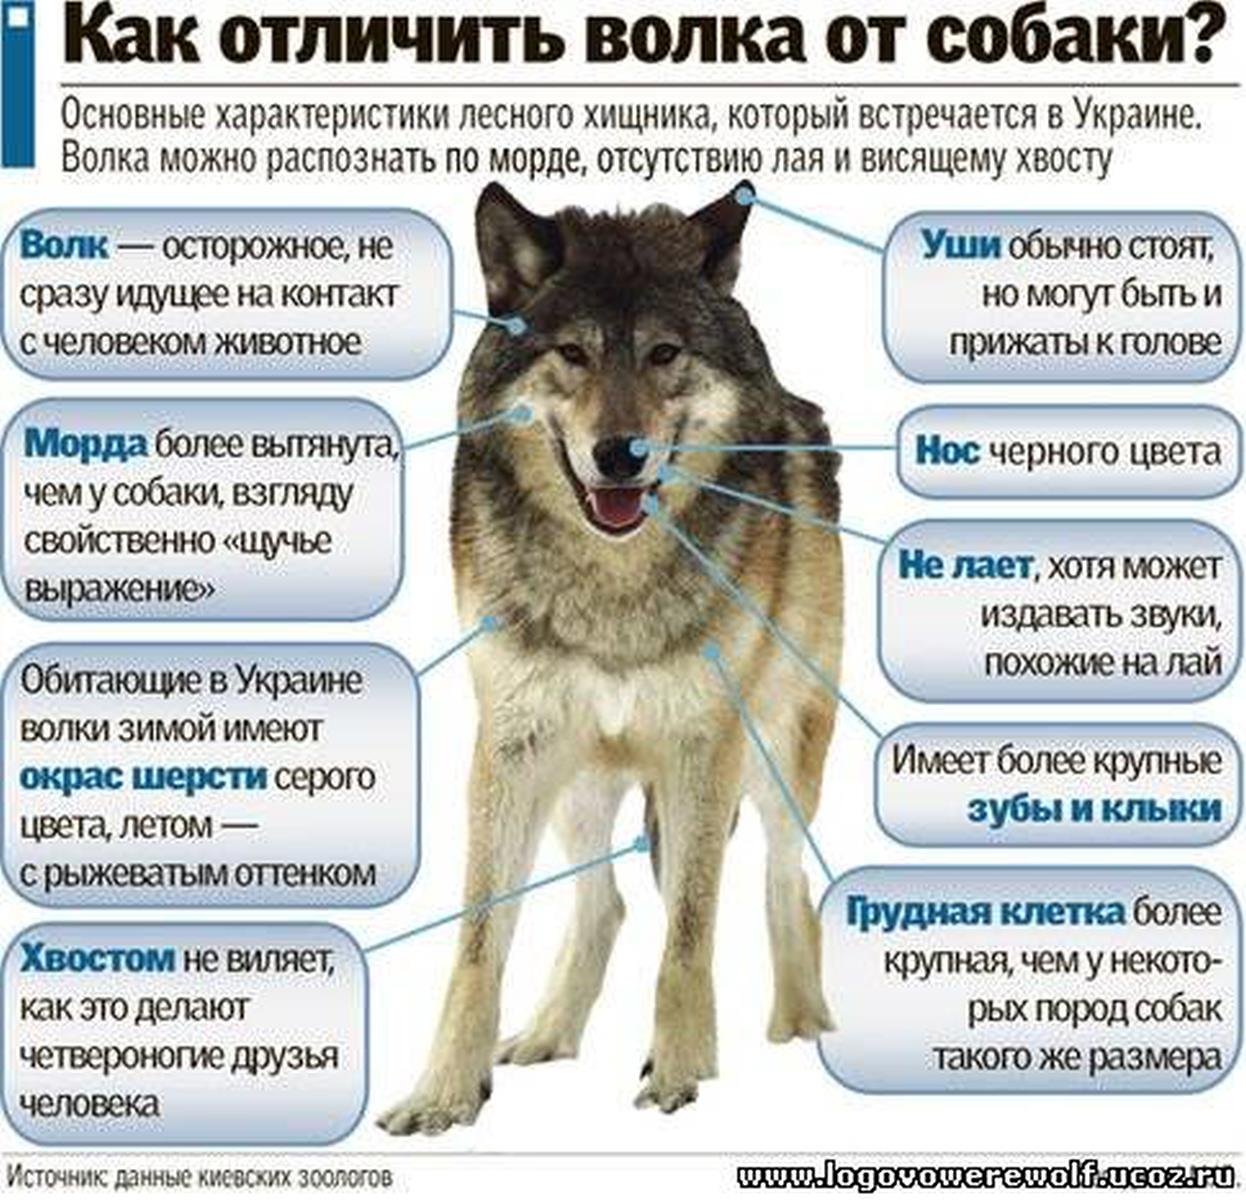 Почему собака считается. Собака волкособ. Лайки волкособы. Порода собаки волкособ характер. Внешние отличия волка от собаки.